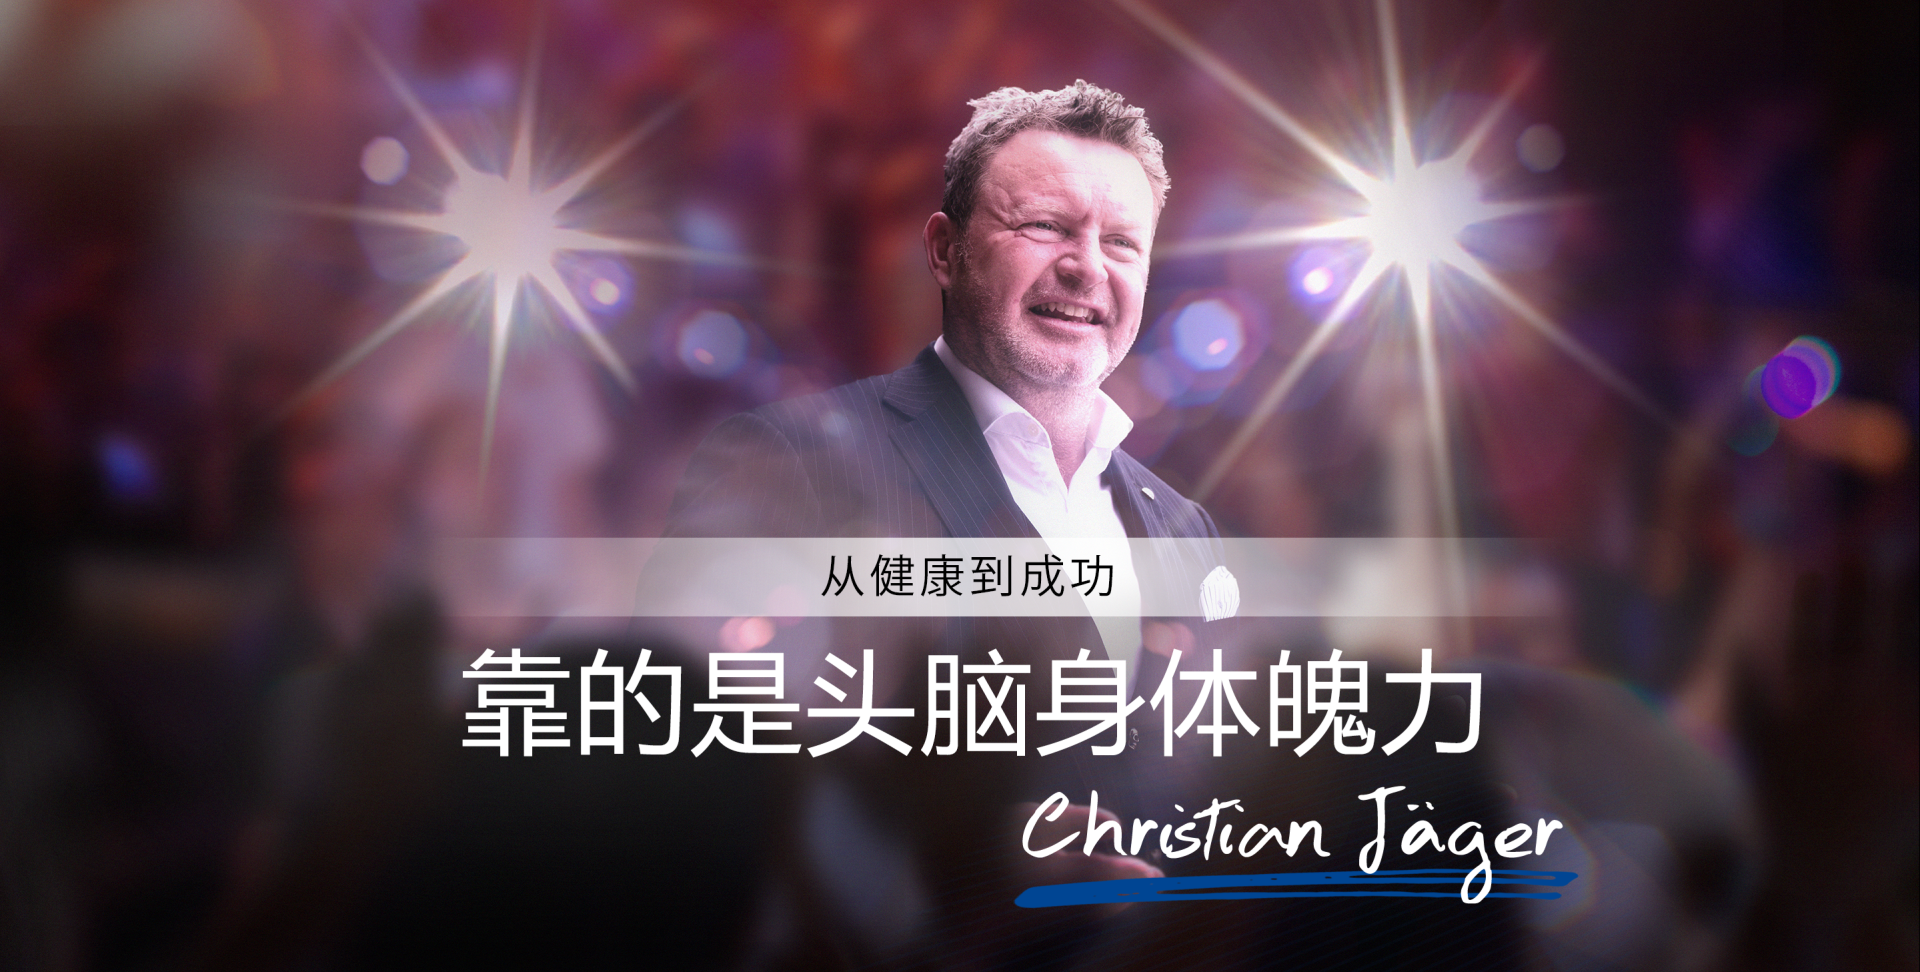 christian_jaeger_website_chinesisch